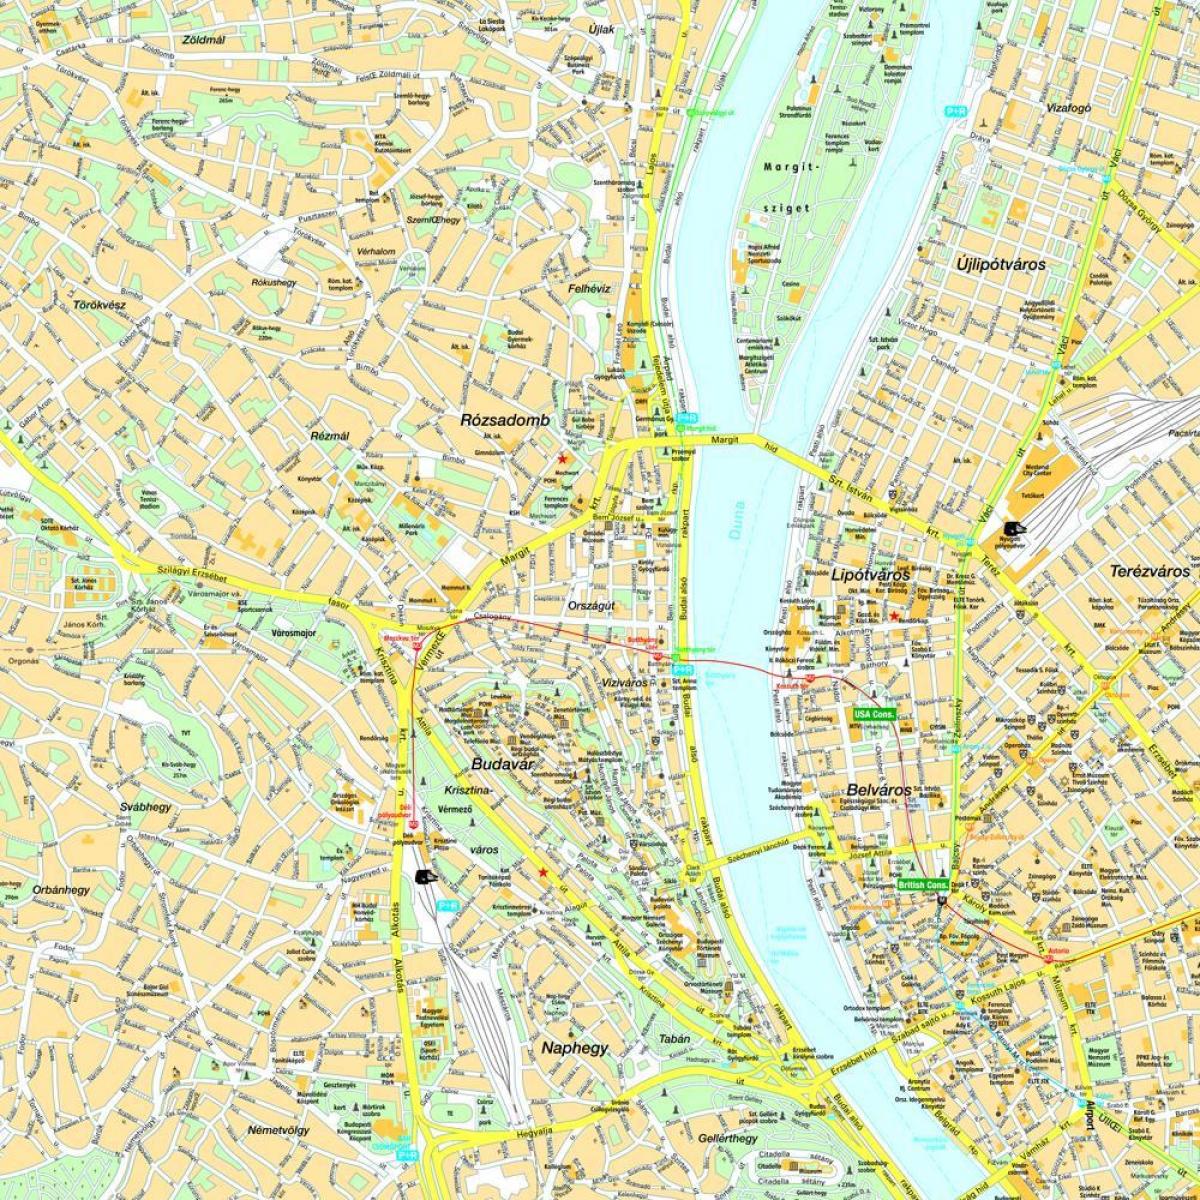 bản đồ của budapest và khu vực xung quanh